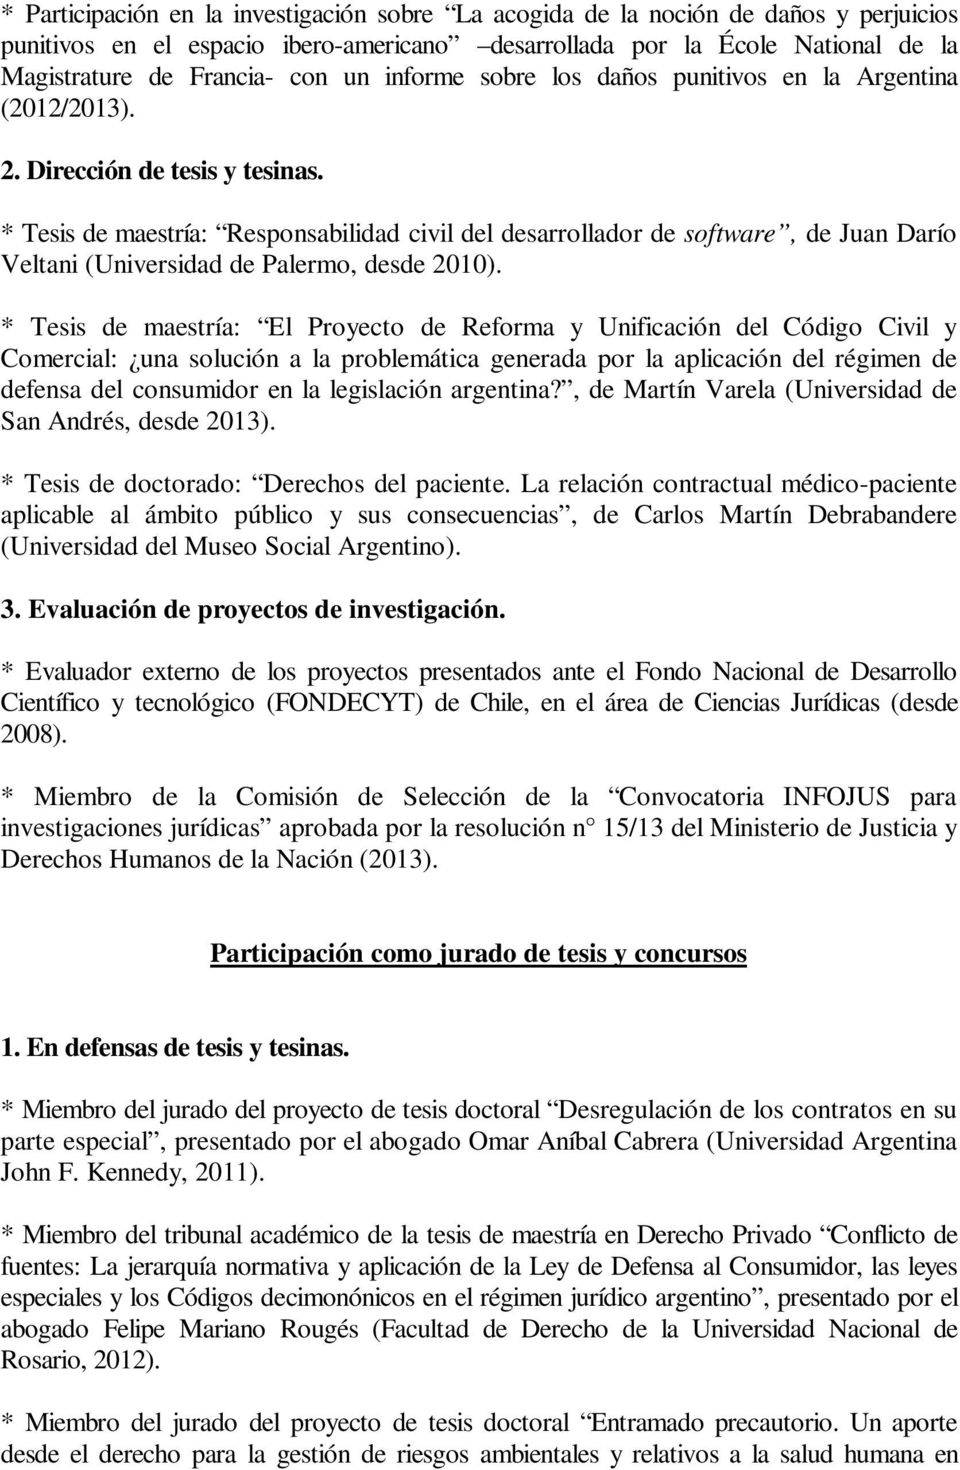 * Tesis de maestría: Responsabilidad civil del desarrollador de software, de Juan Darío Veltani (Universidad de Palermo, desde 2010).